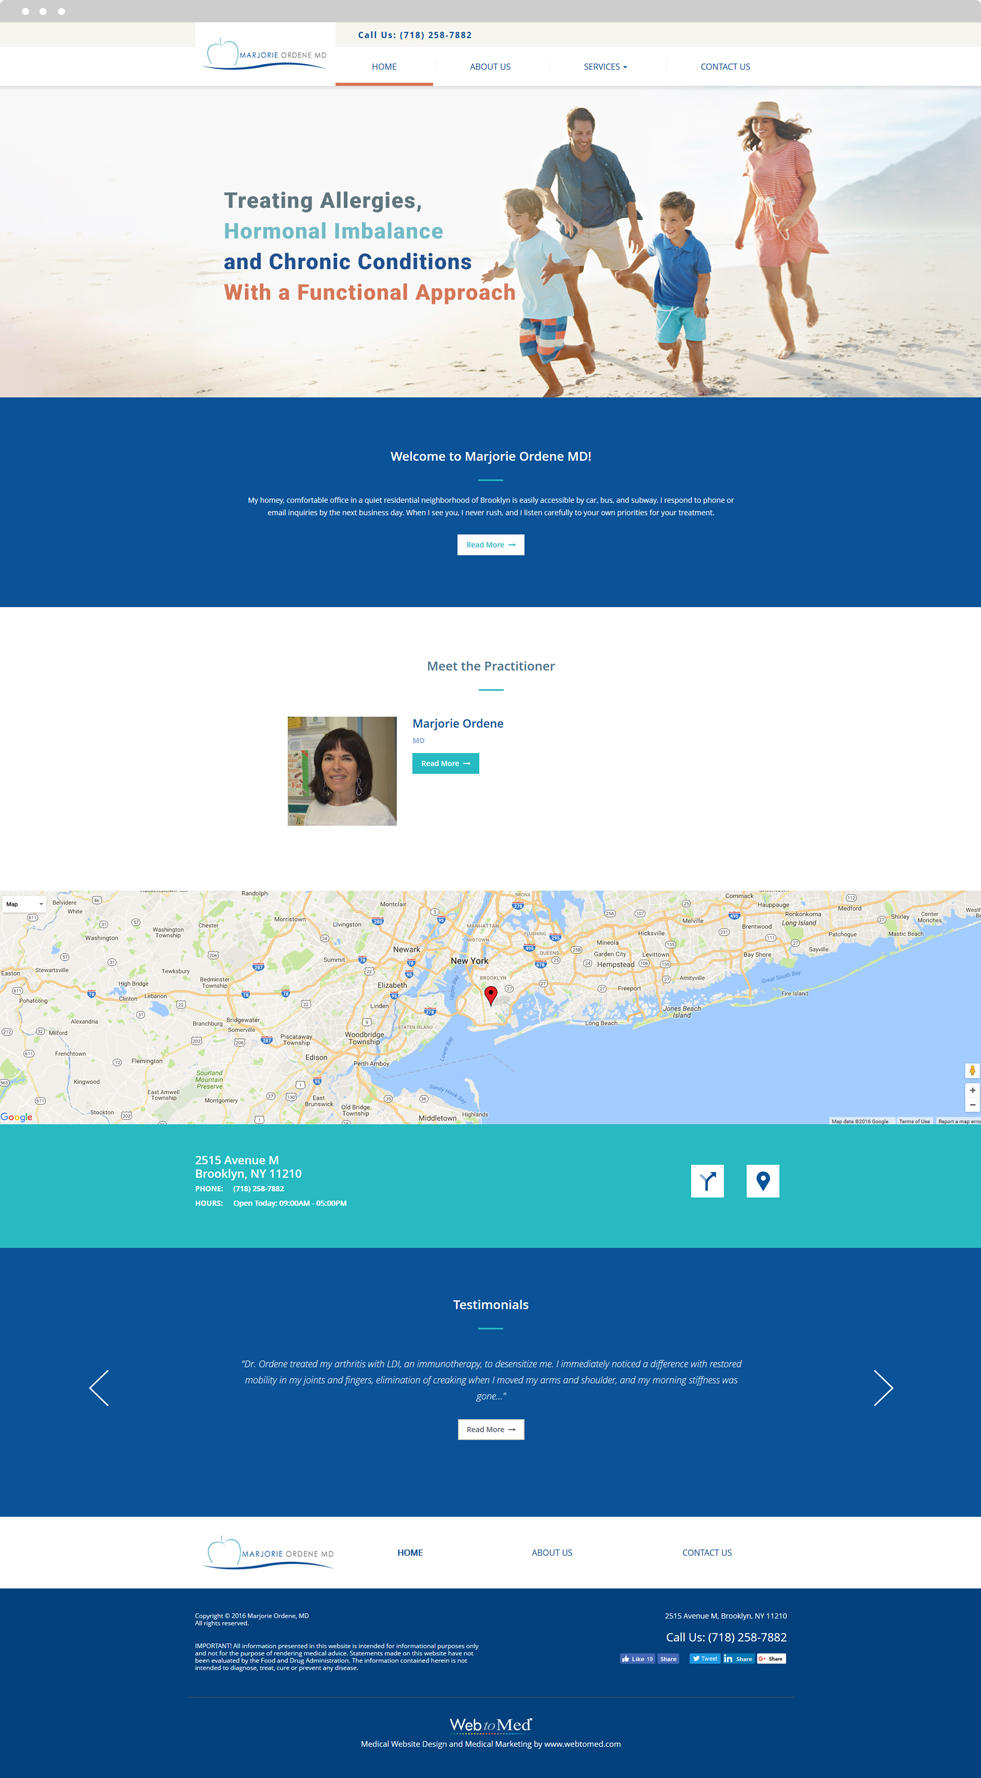 Functional Medicine Website Design - Marjorie Ordene, MD - Homepage